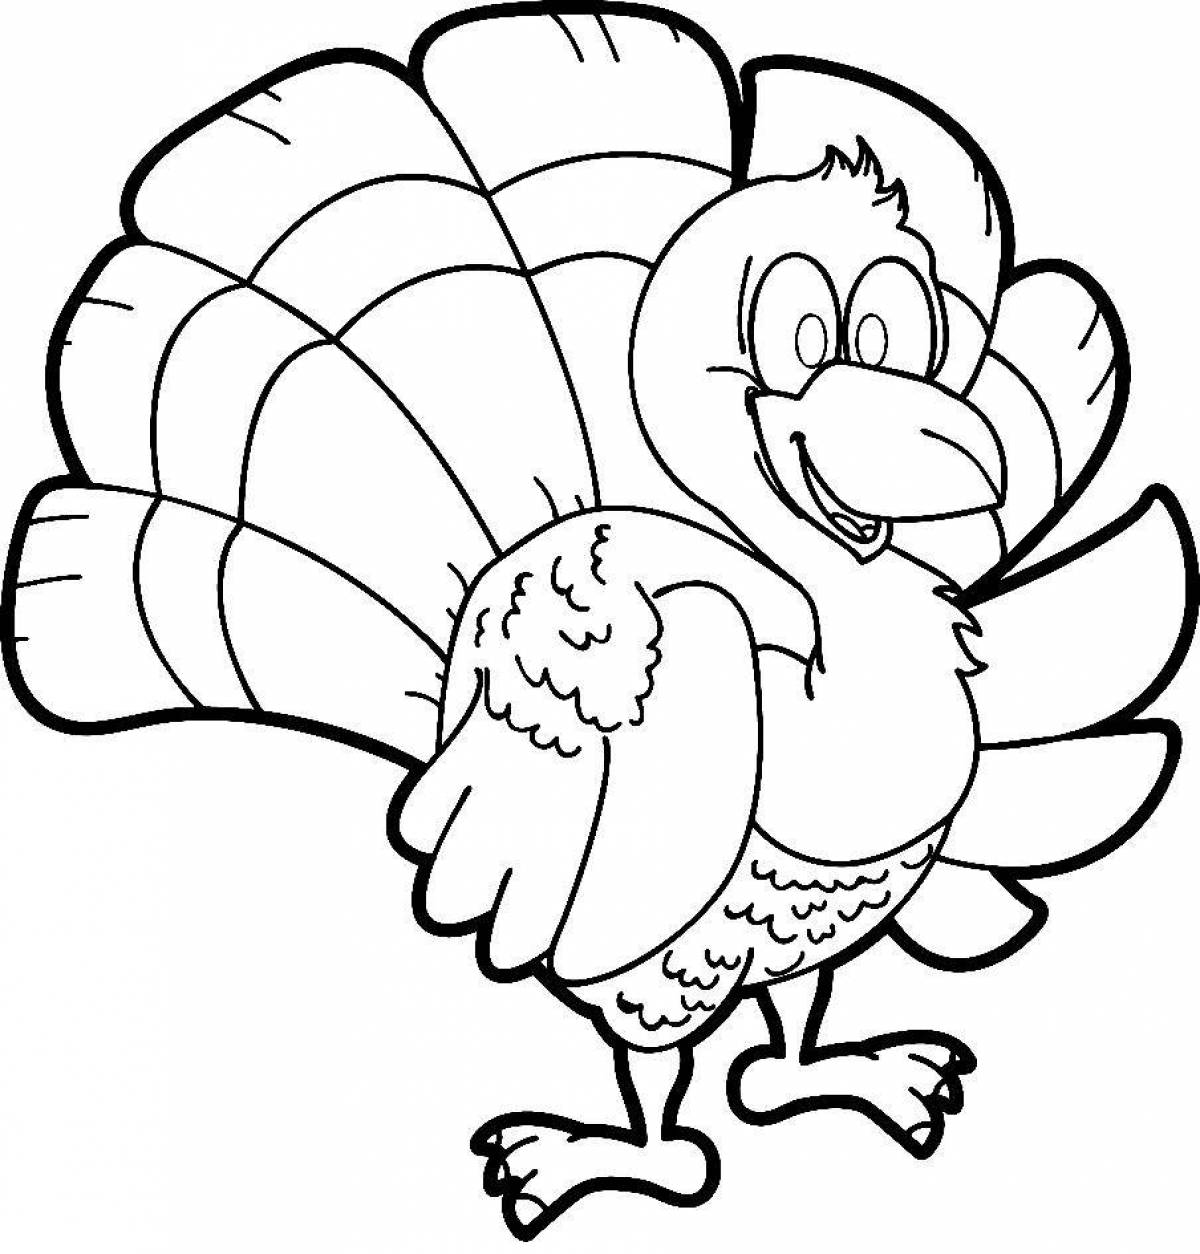 Fun coloring turkey